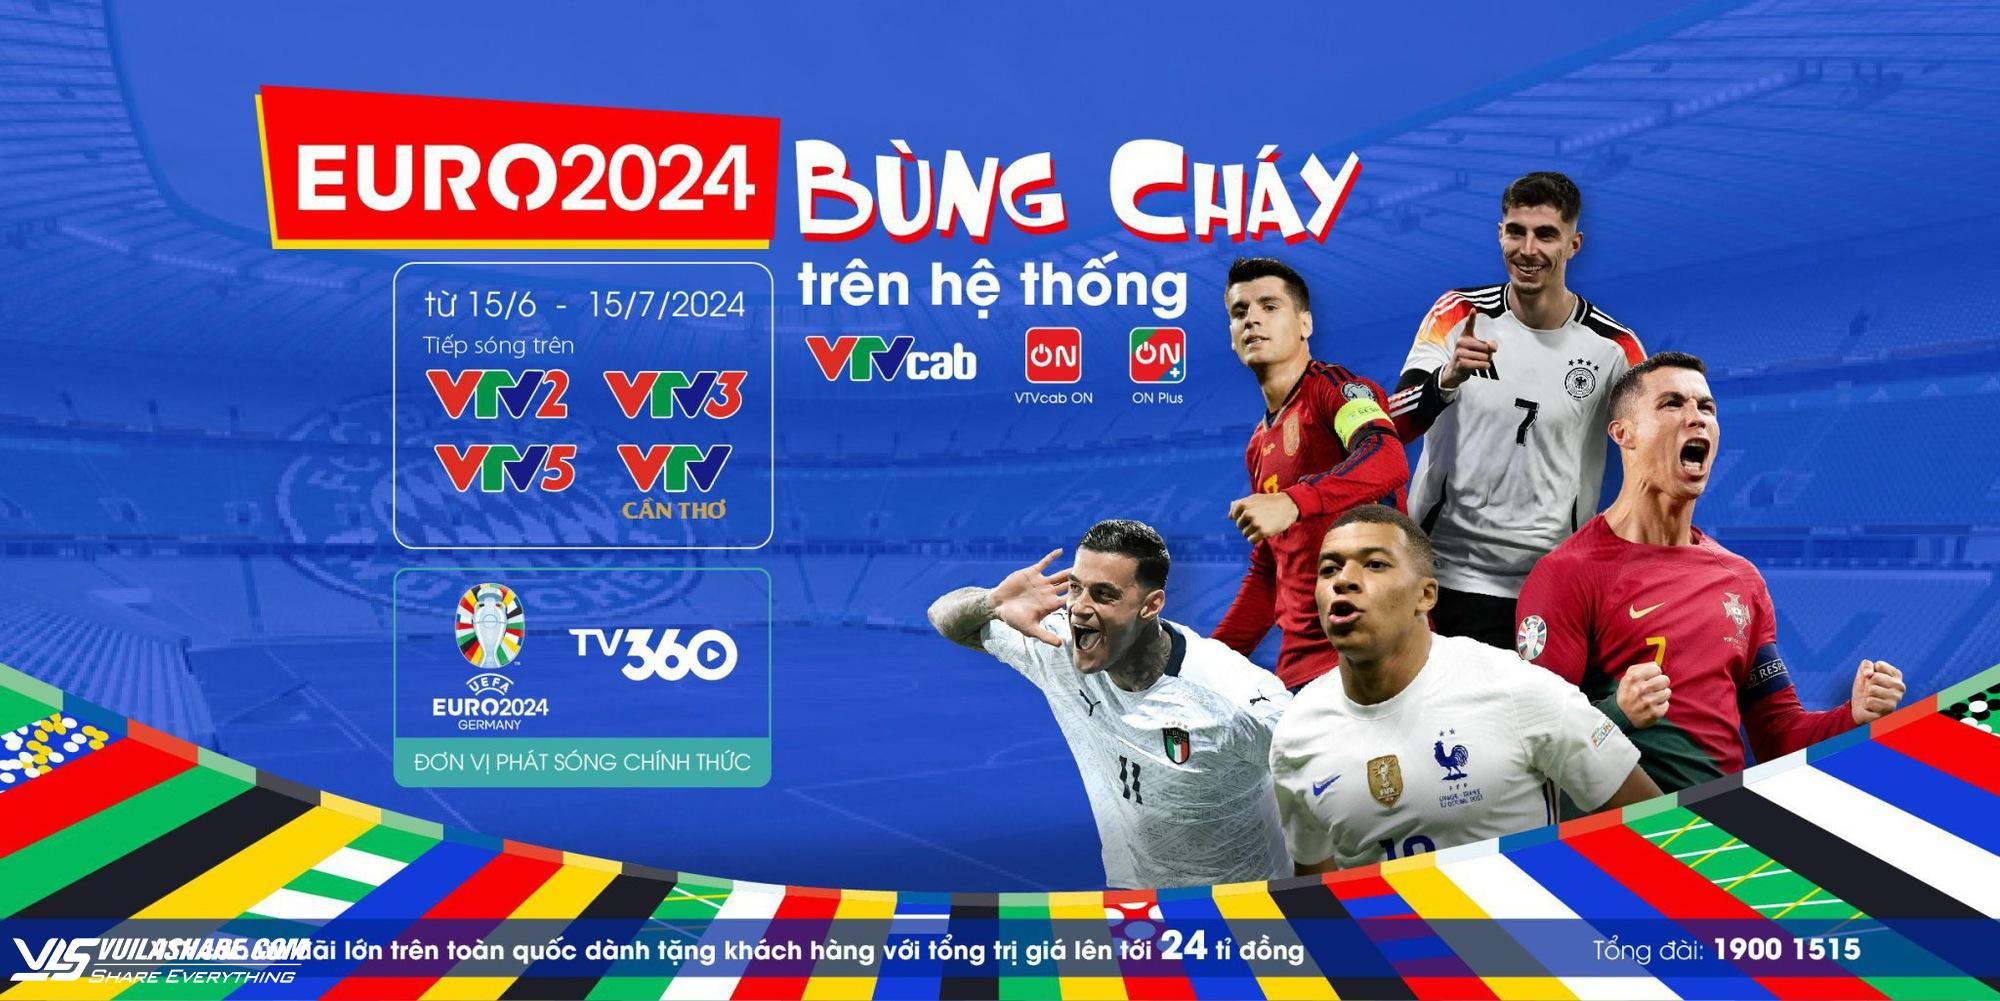 EURO 2024 'bùng cháy' với nhiều đội hùng mạnh, VTVcab đã sẵn sàng!- Ảnh 2.